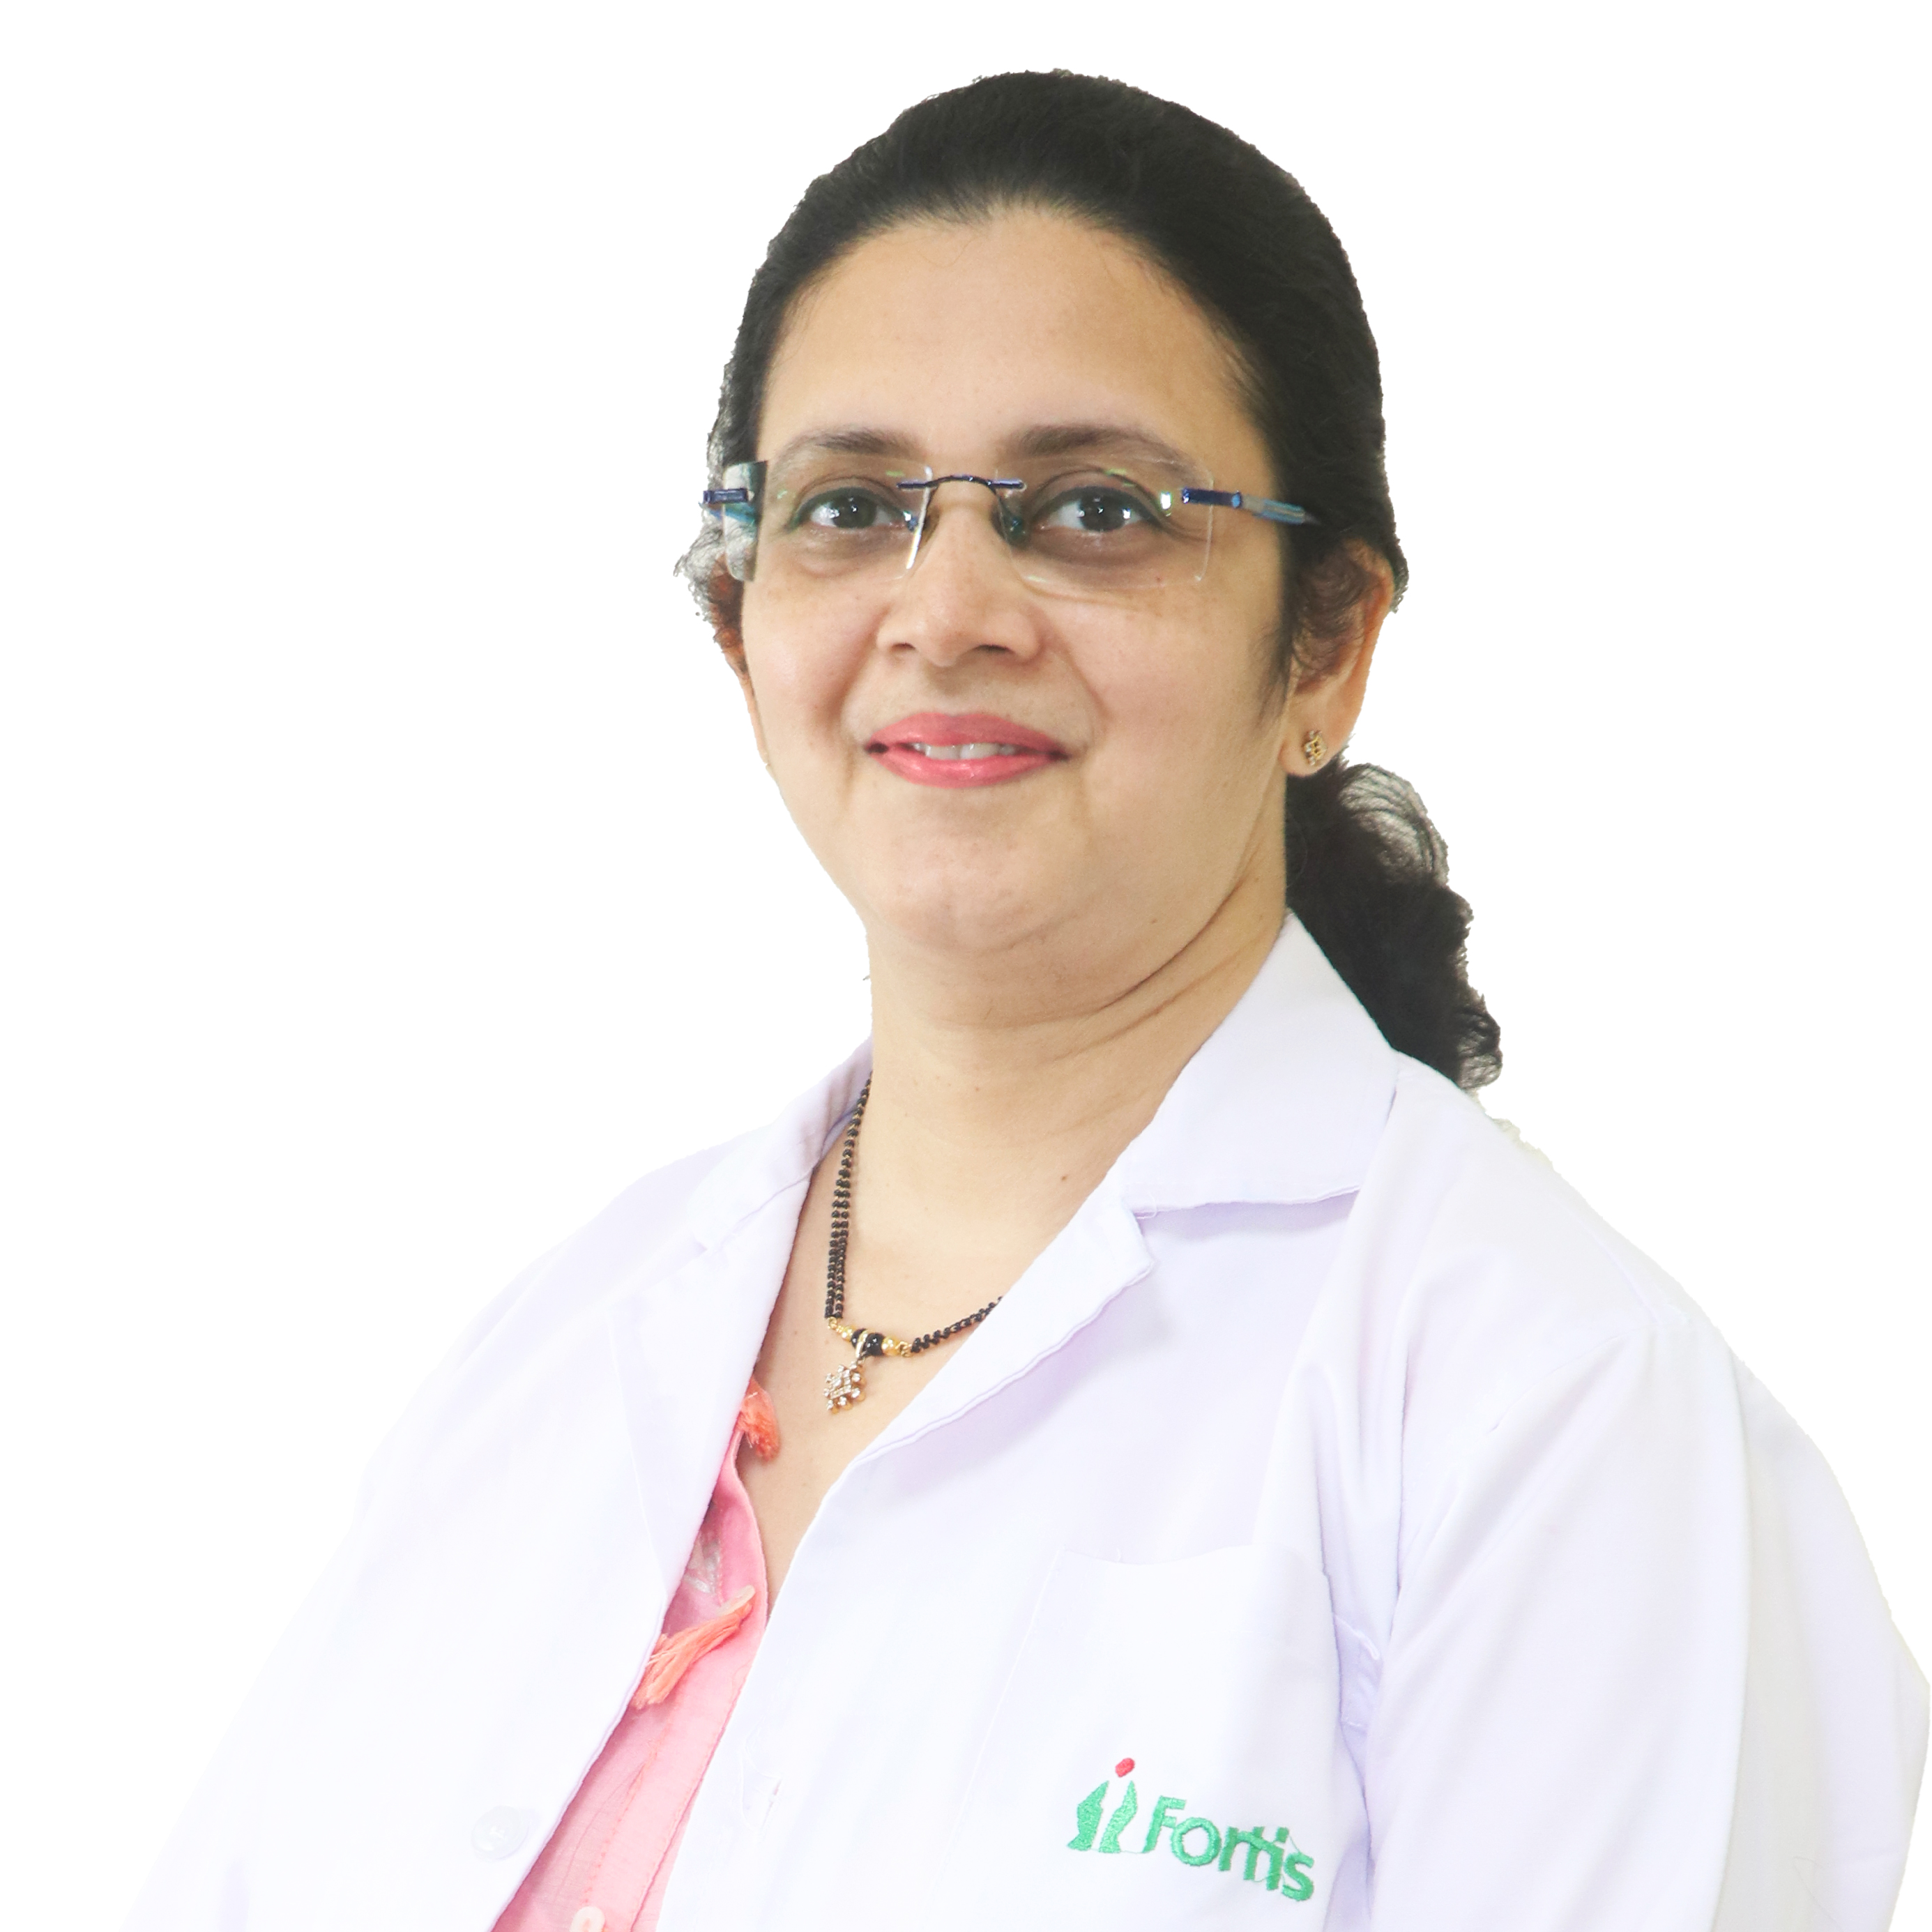 Dr. Sonal Kumta